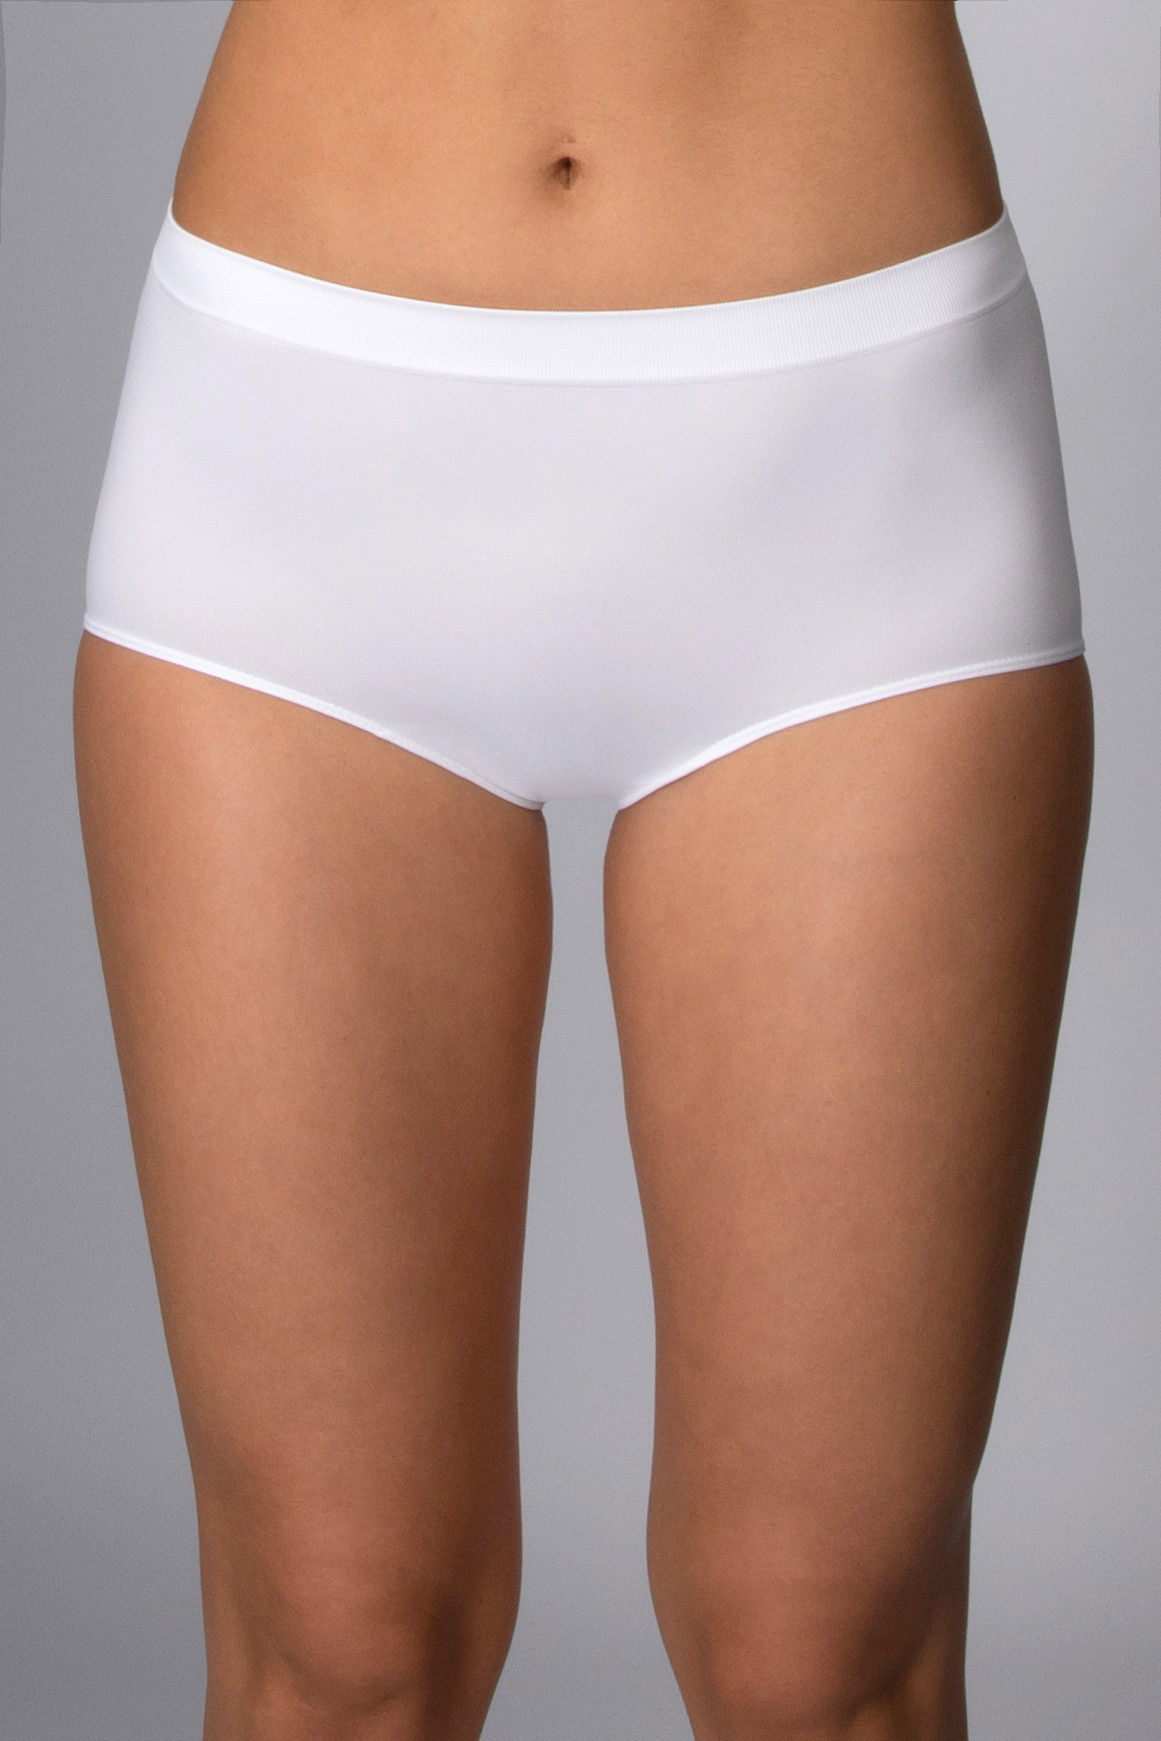 Kalhotky s vyšším pasem bezešvé Culotte Intimidea Barva: Bílá, velikost S/M